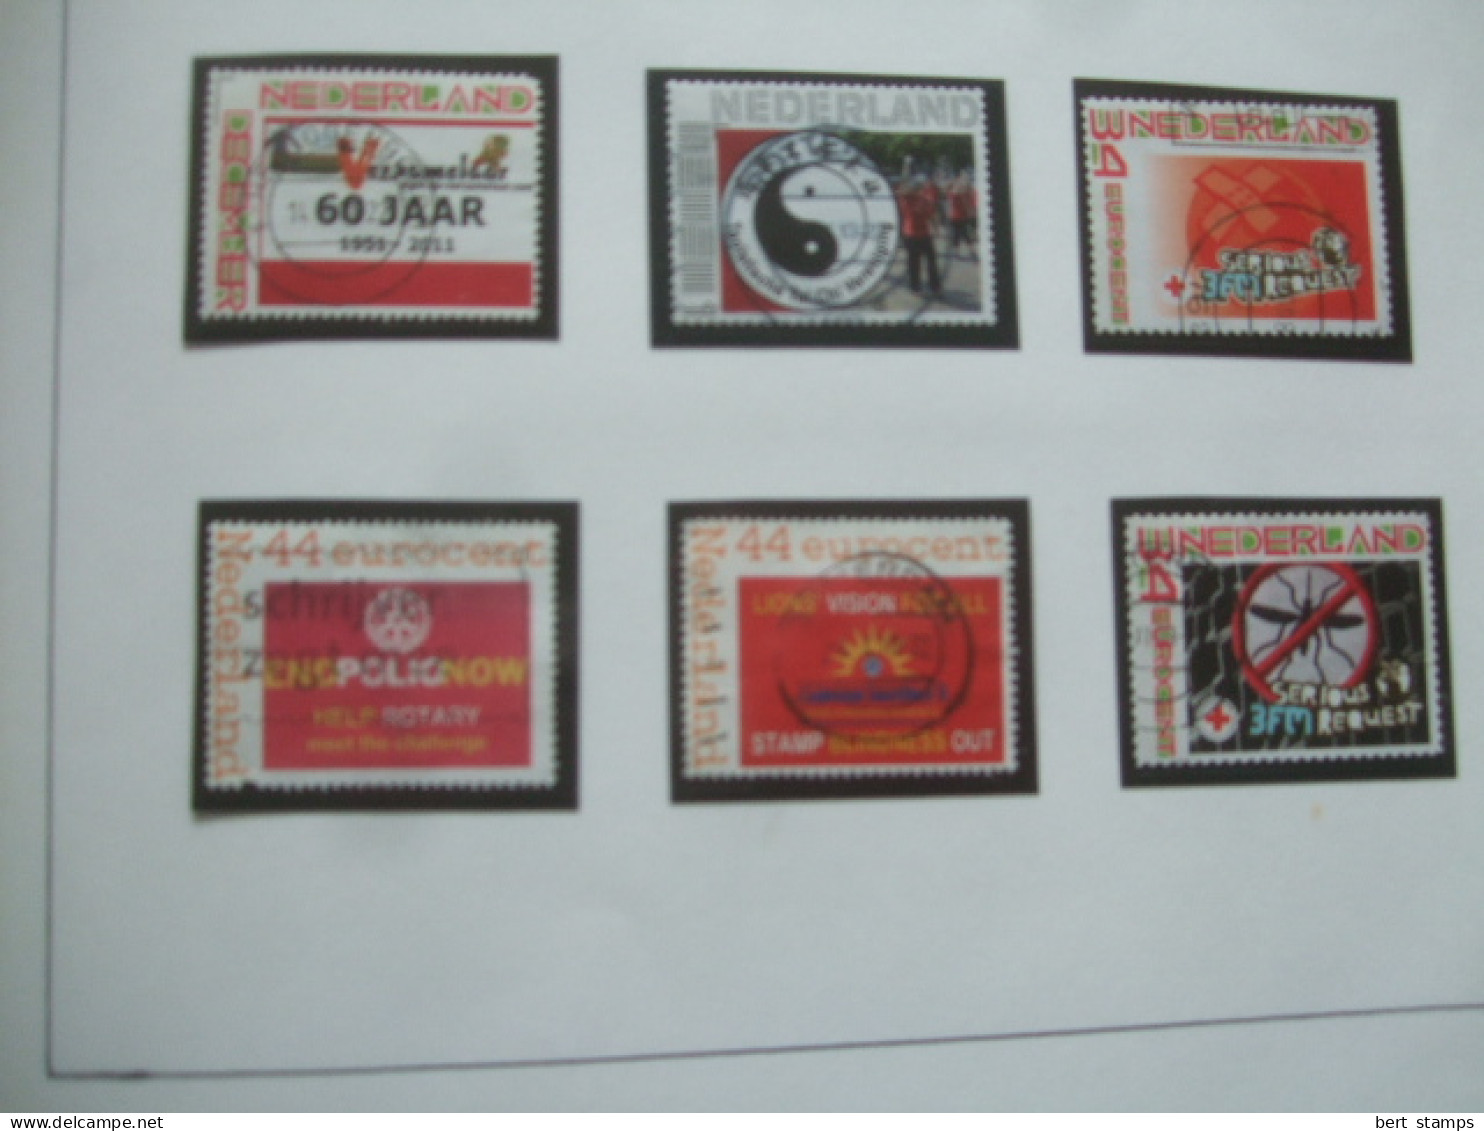 Verzameling persoonlijke postzegels op album bladen